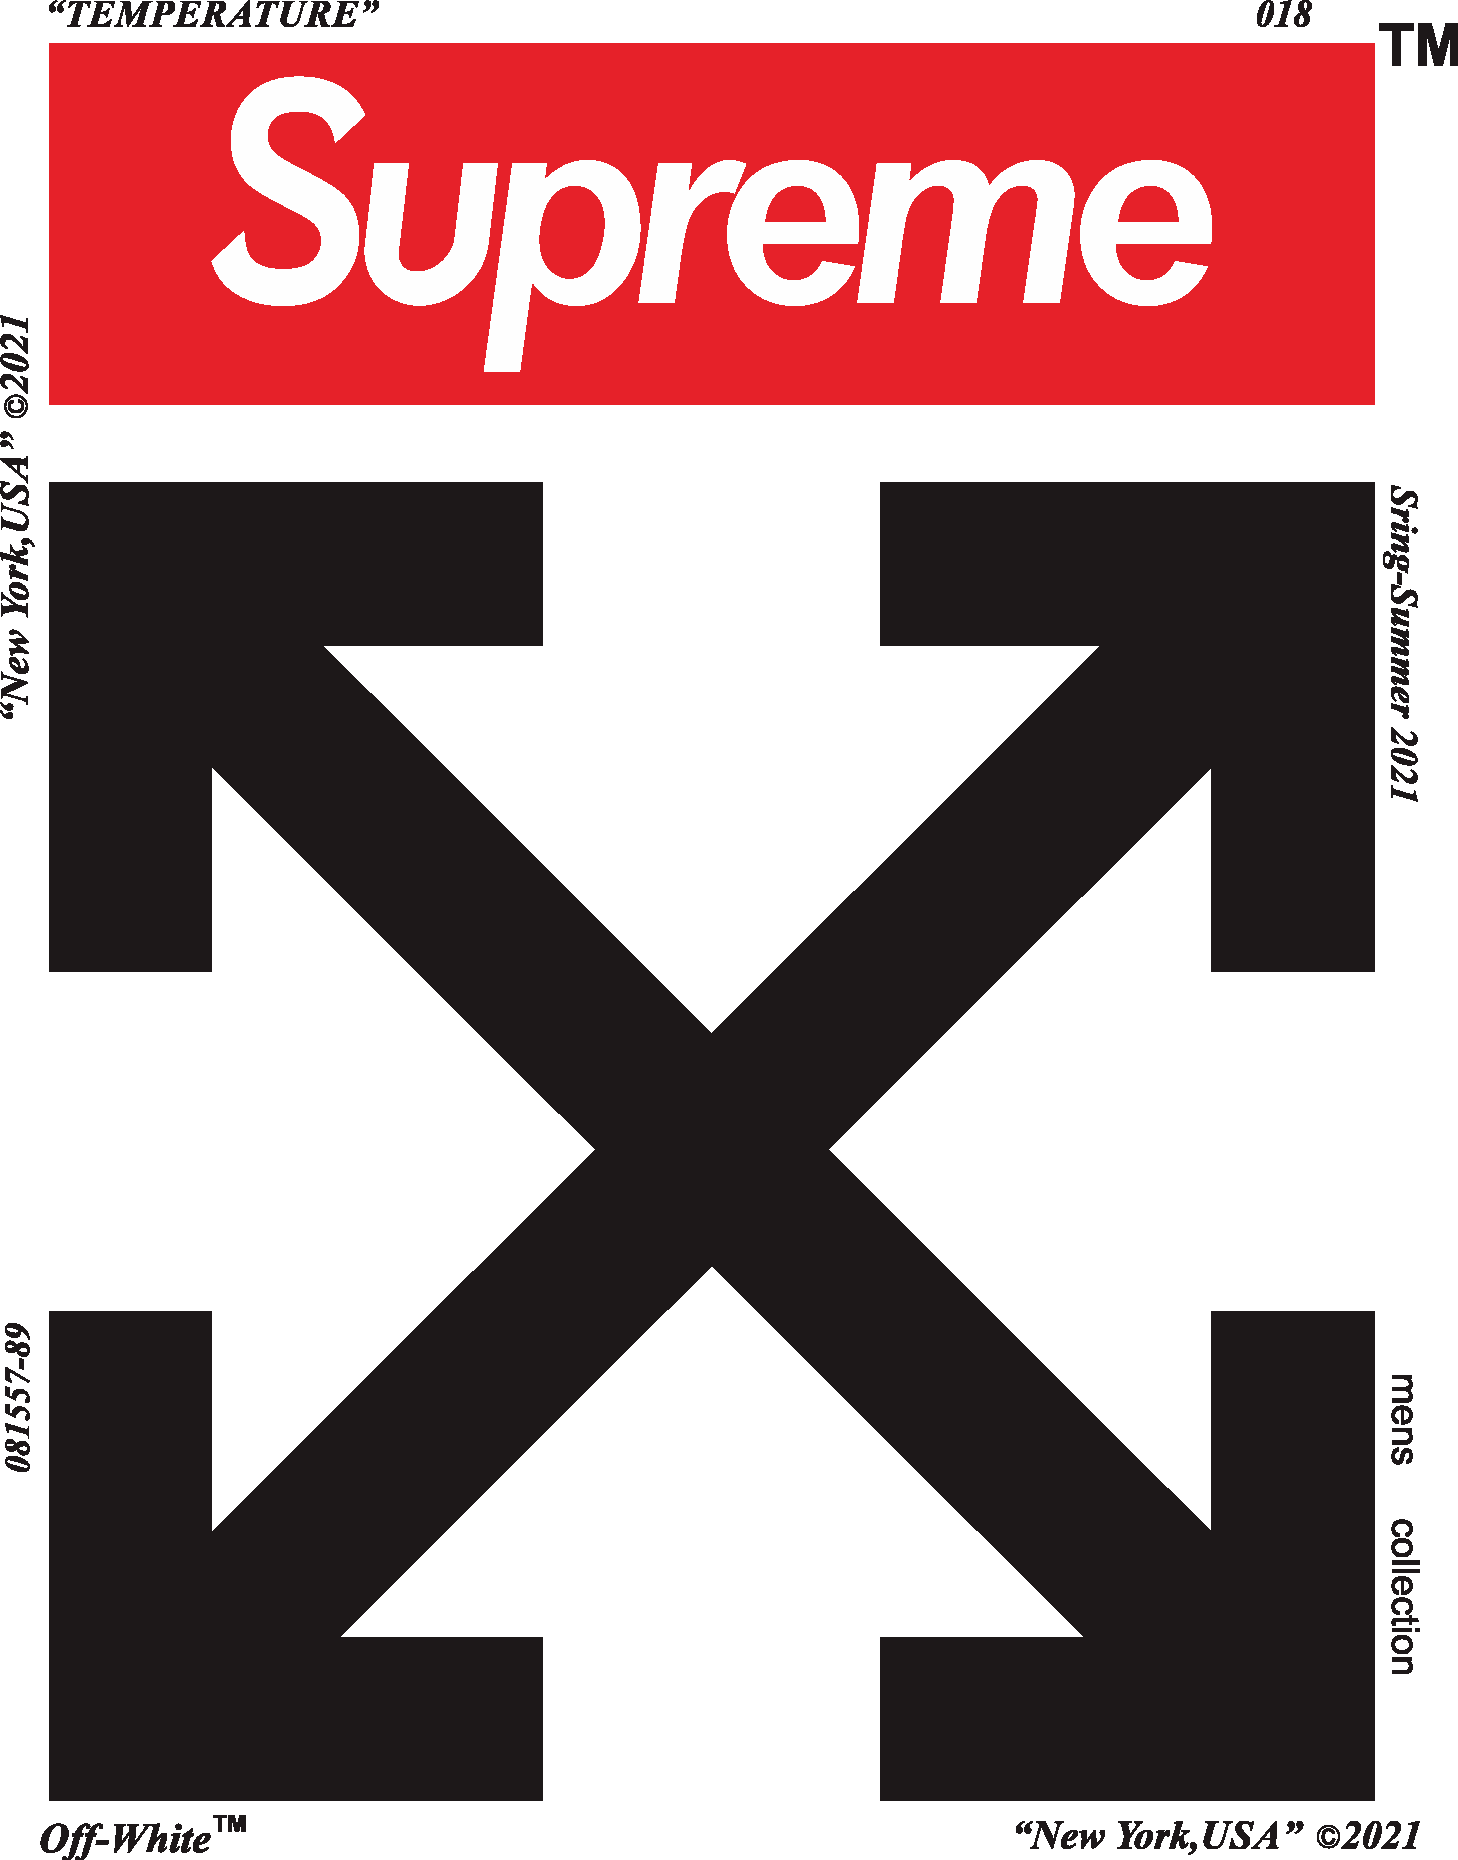 Supreme Logo PNG Images, Transparent Supreme Logo Image Download